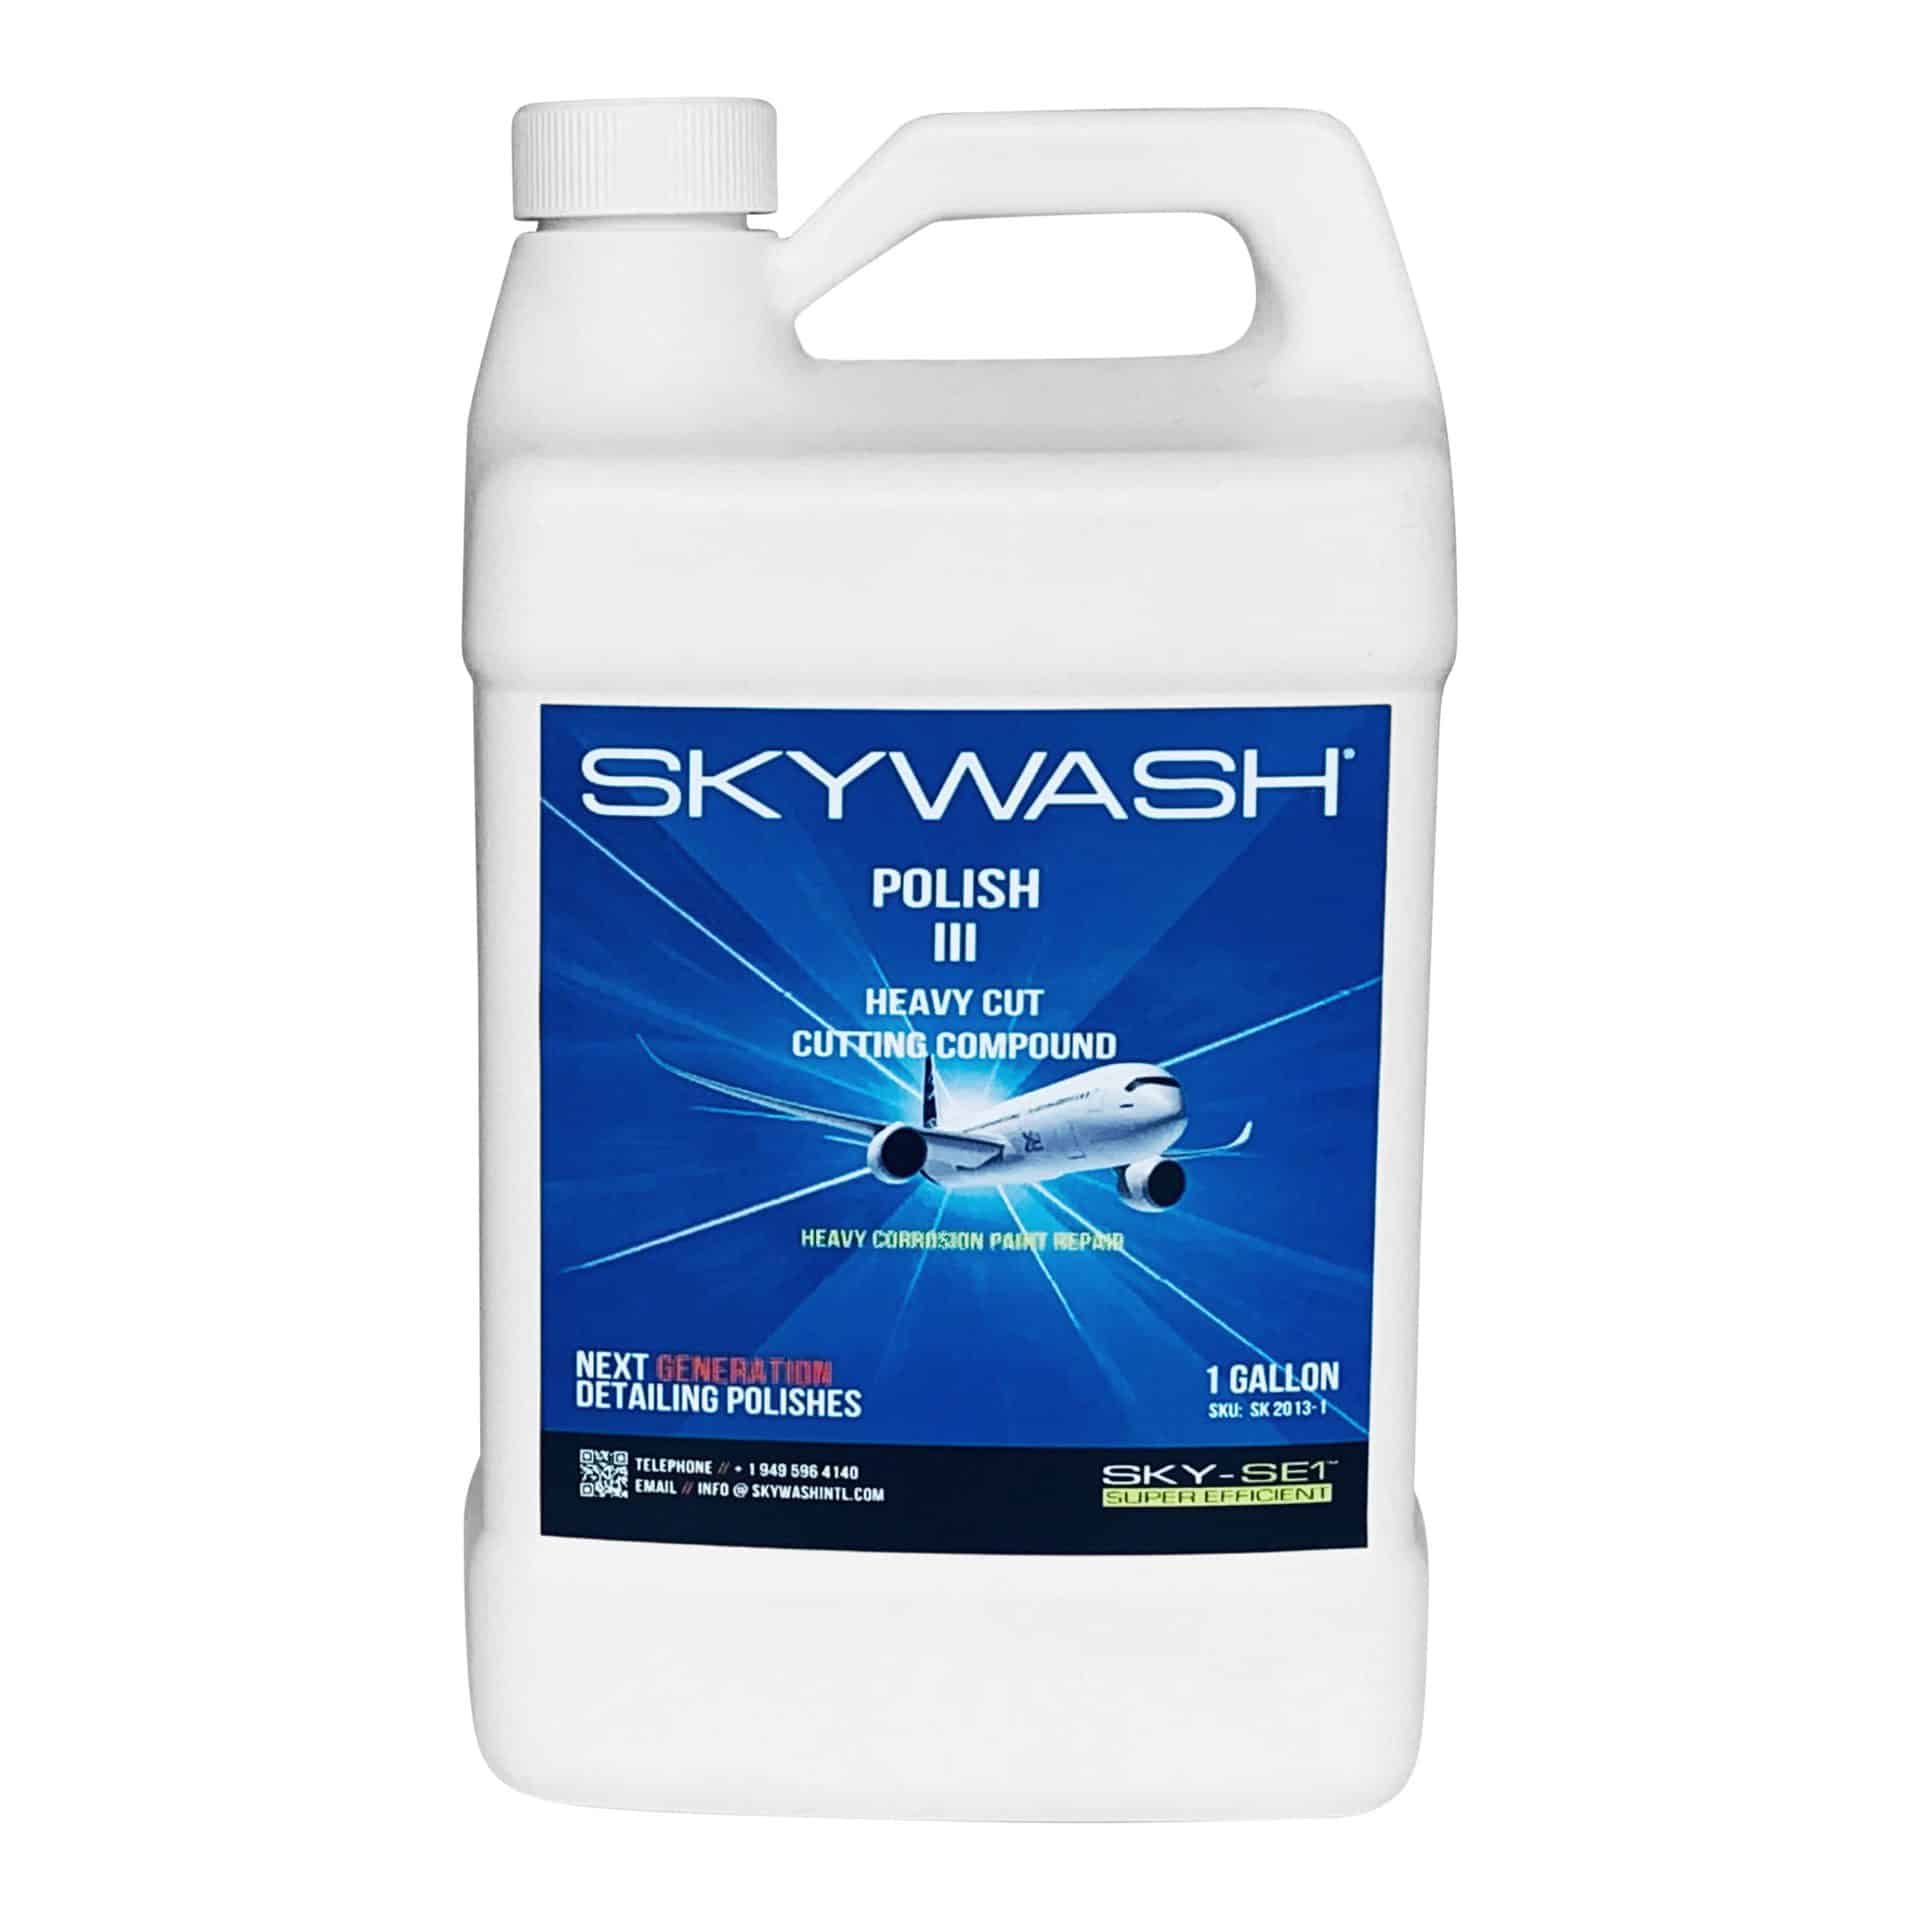 Polish III Heavy Cutting Compound (550) SKU: SK2013 - Skywash International